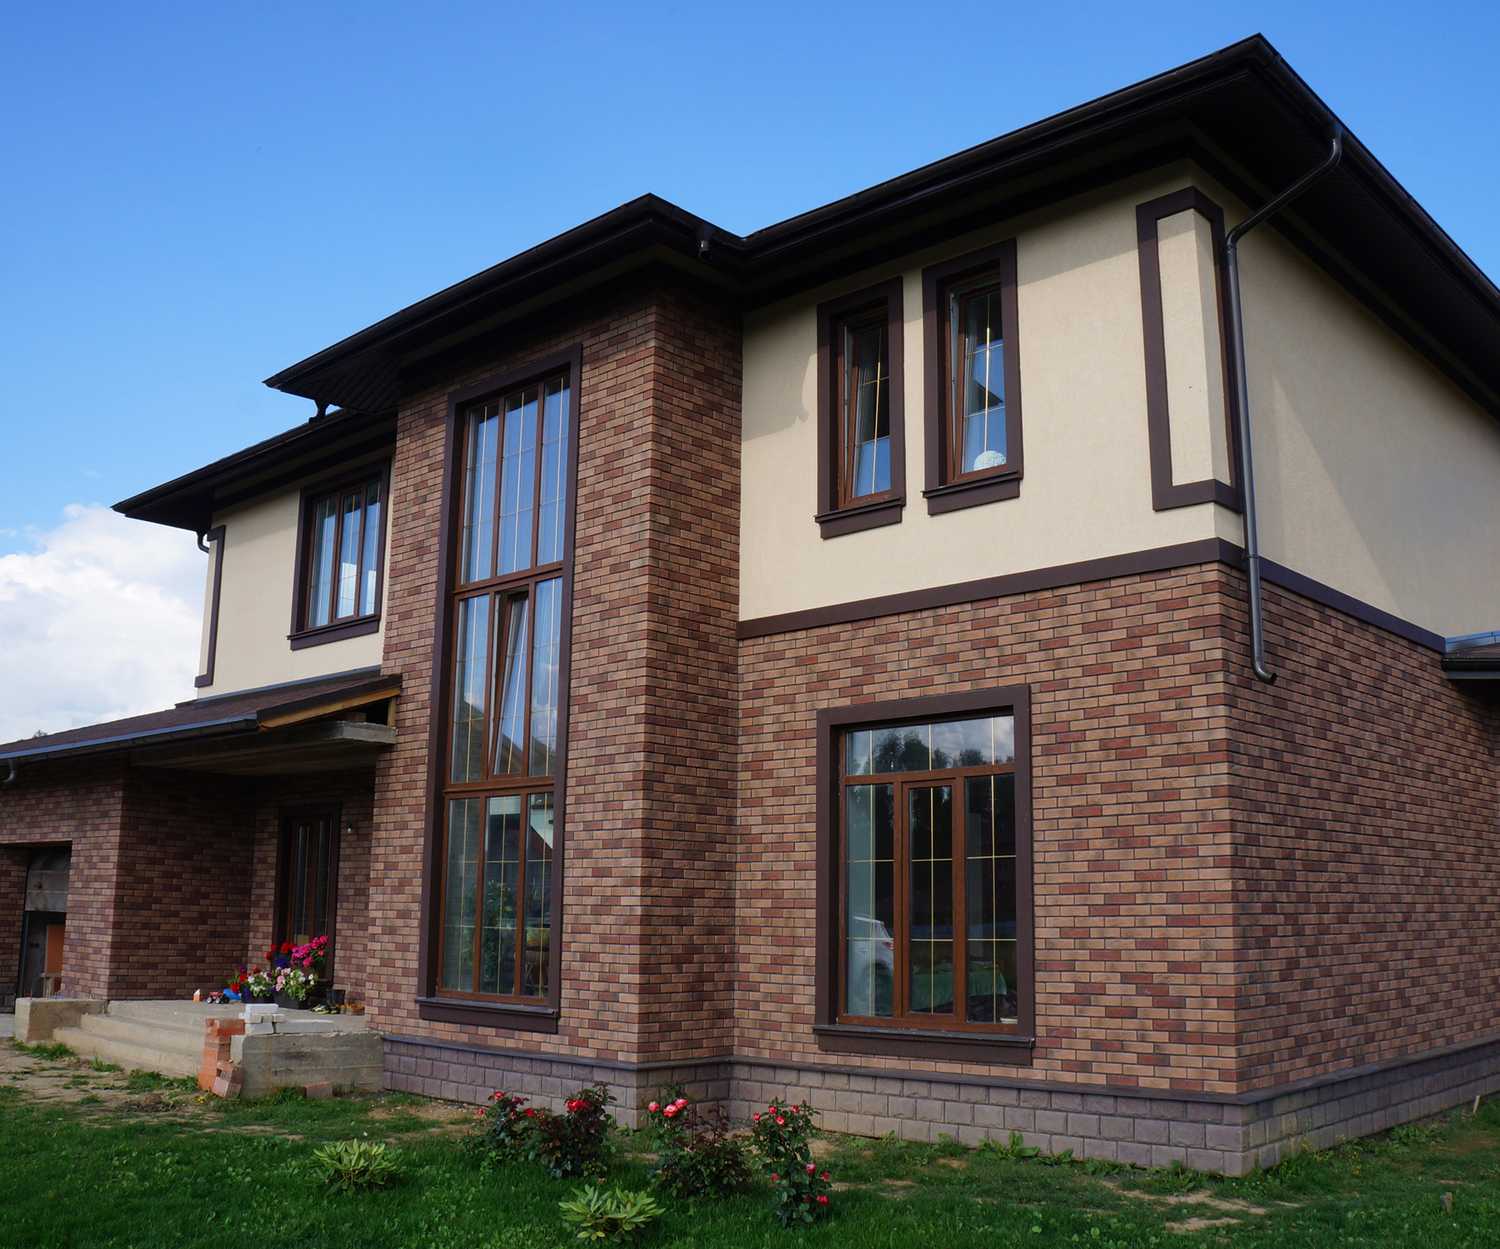 8 недорогих видов отделки фасада частного дома. популярные варианты внешней отделки дома | всё об интерьере для дома и квартиры